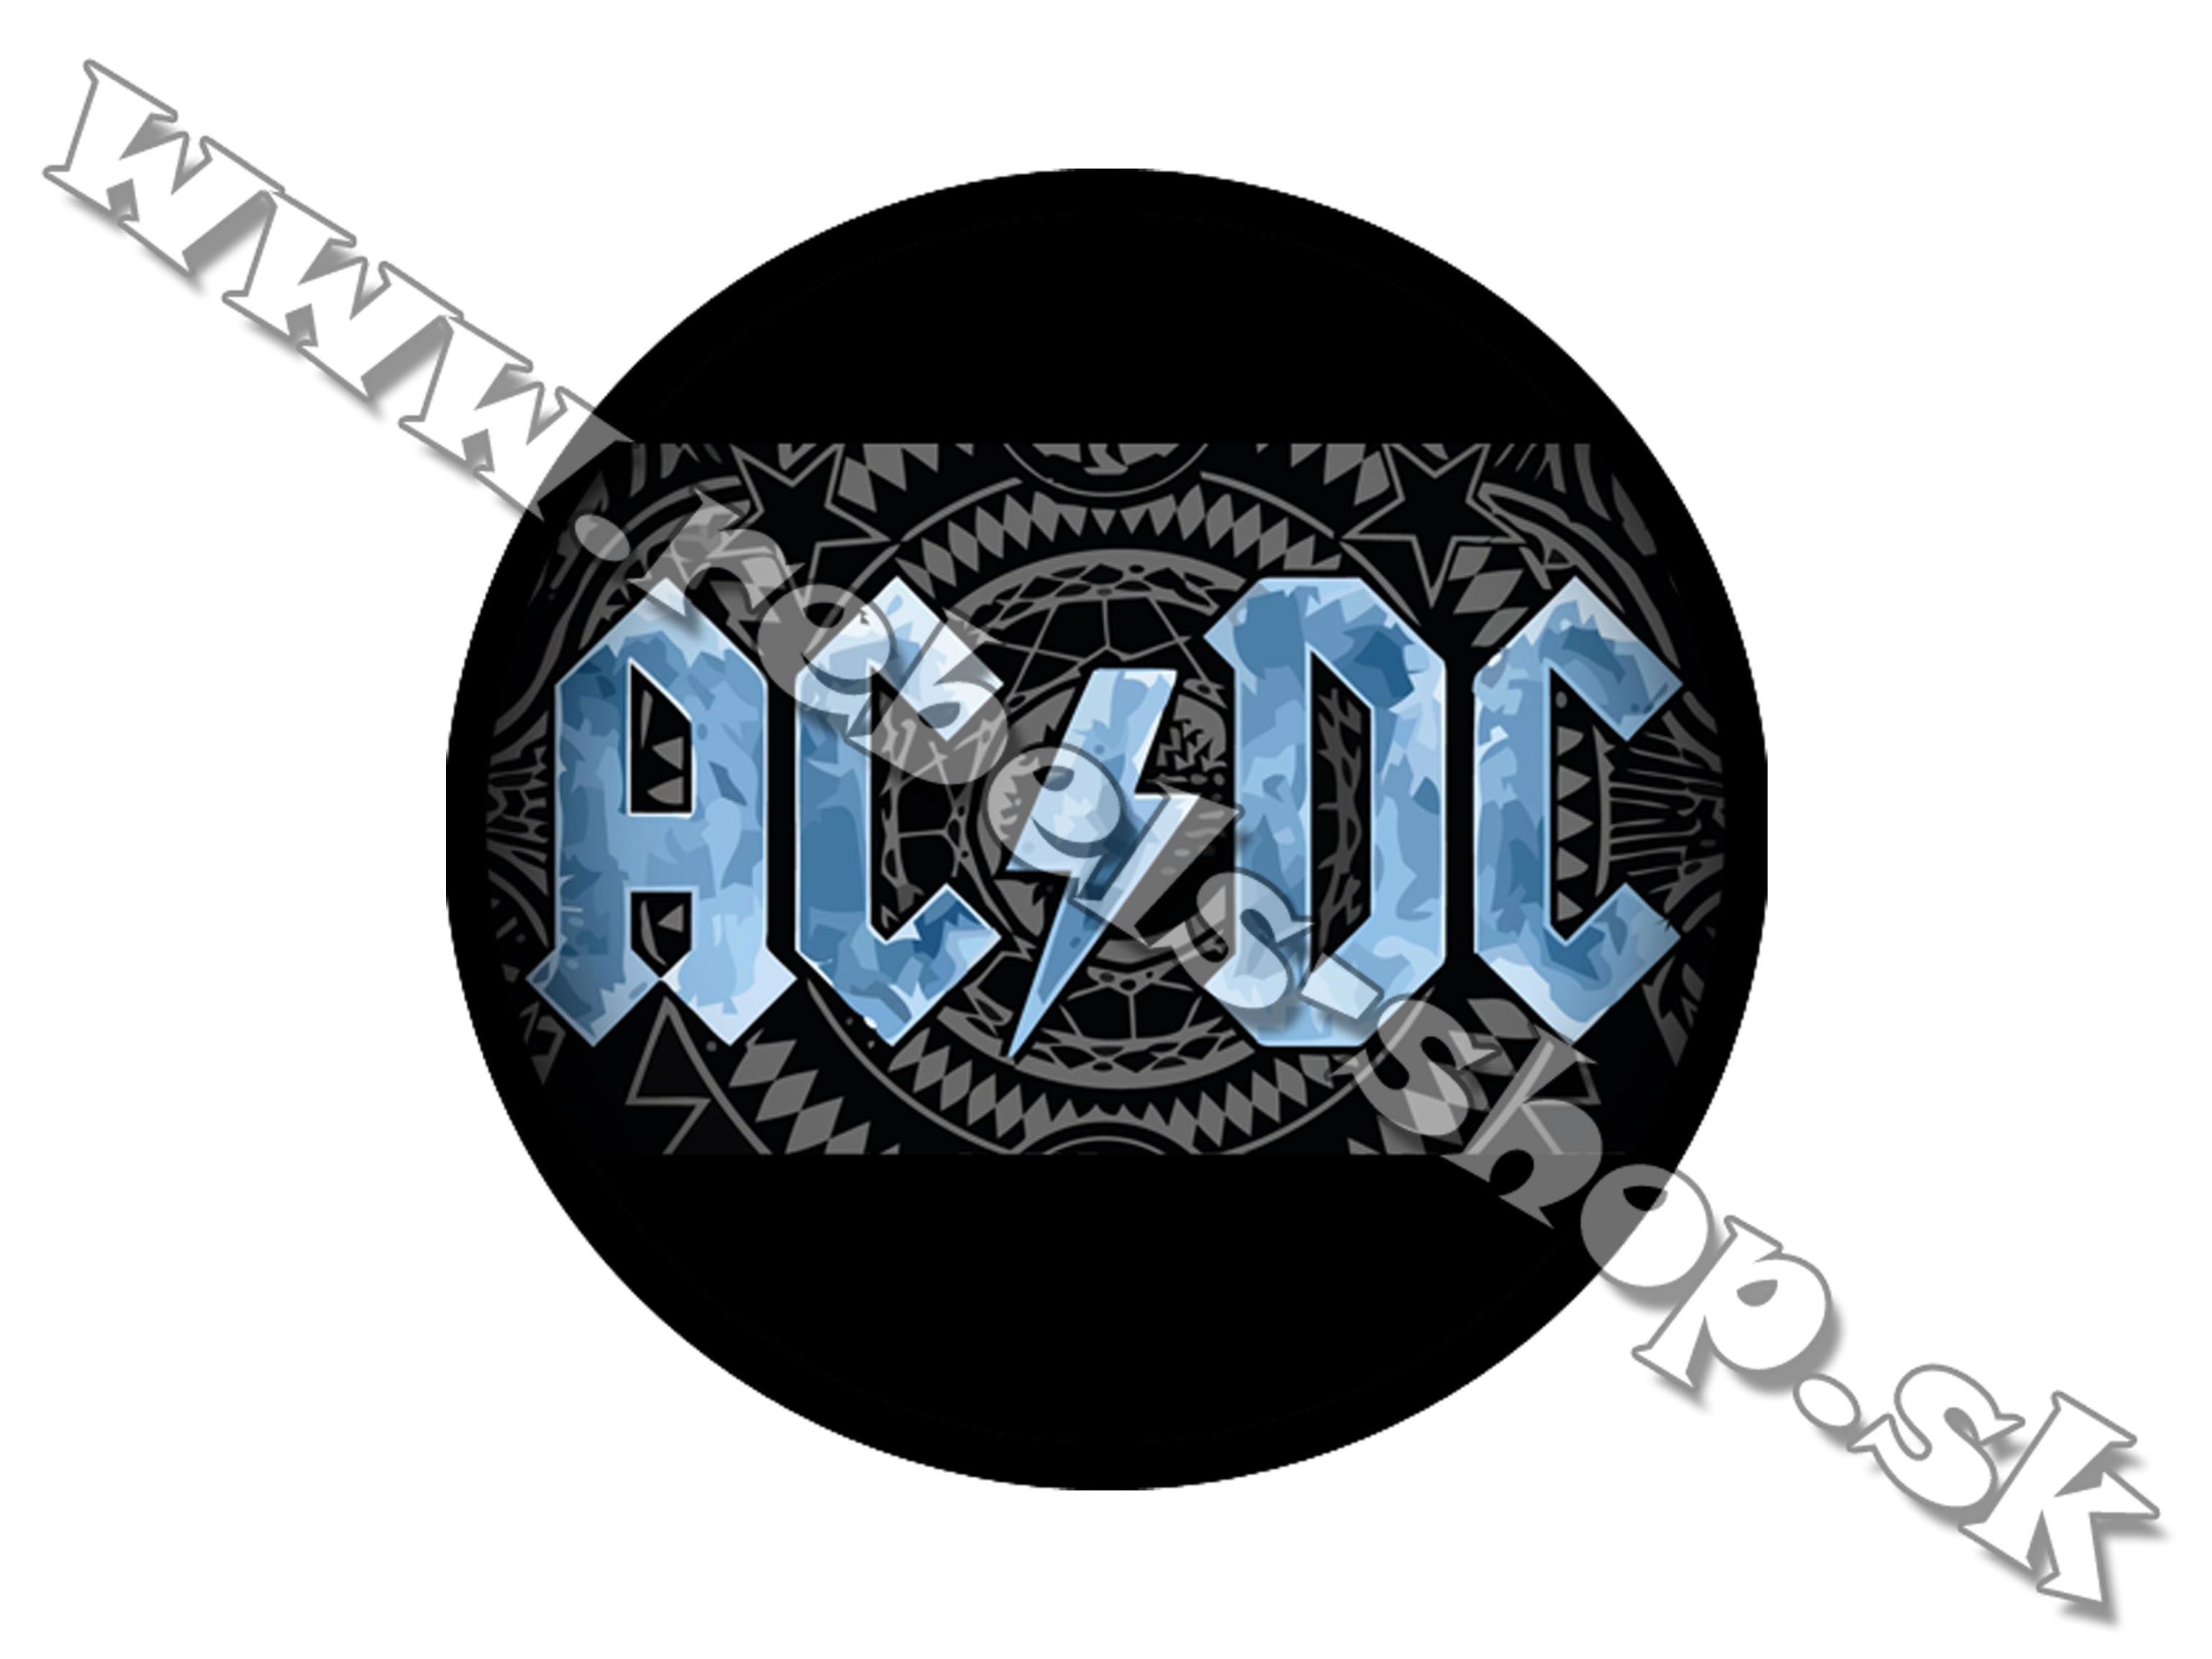 Odznak "ACDC"